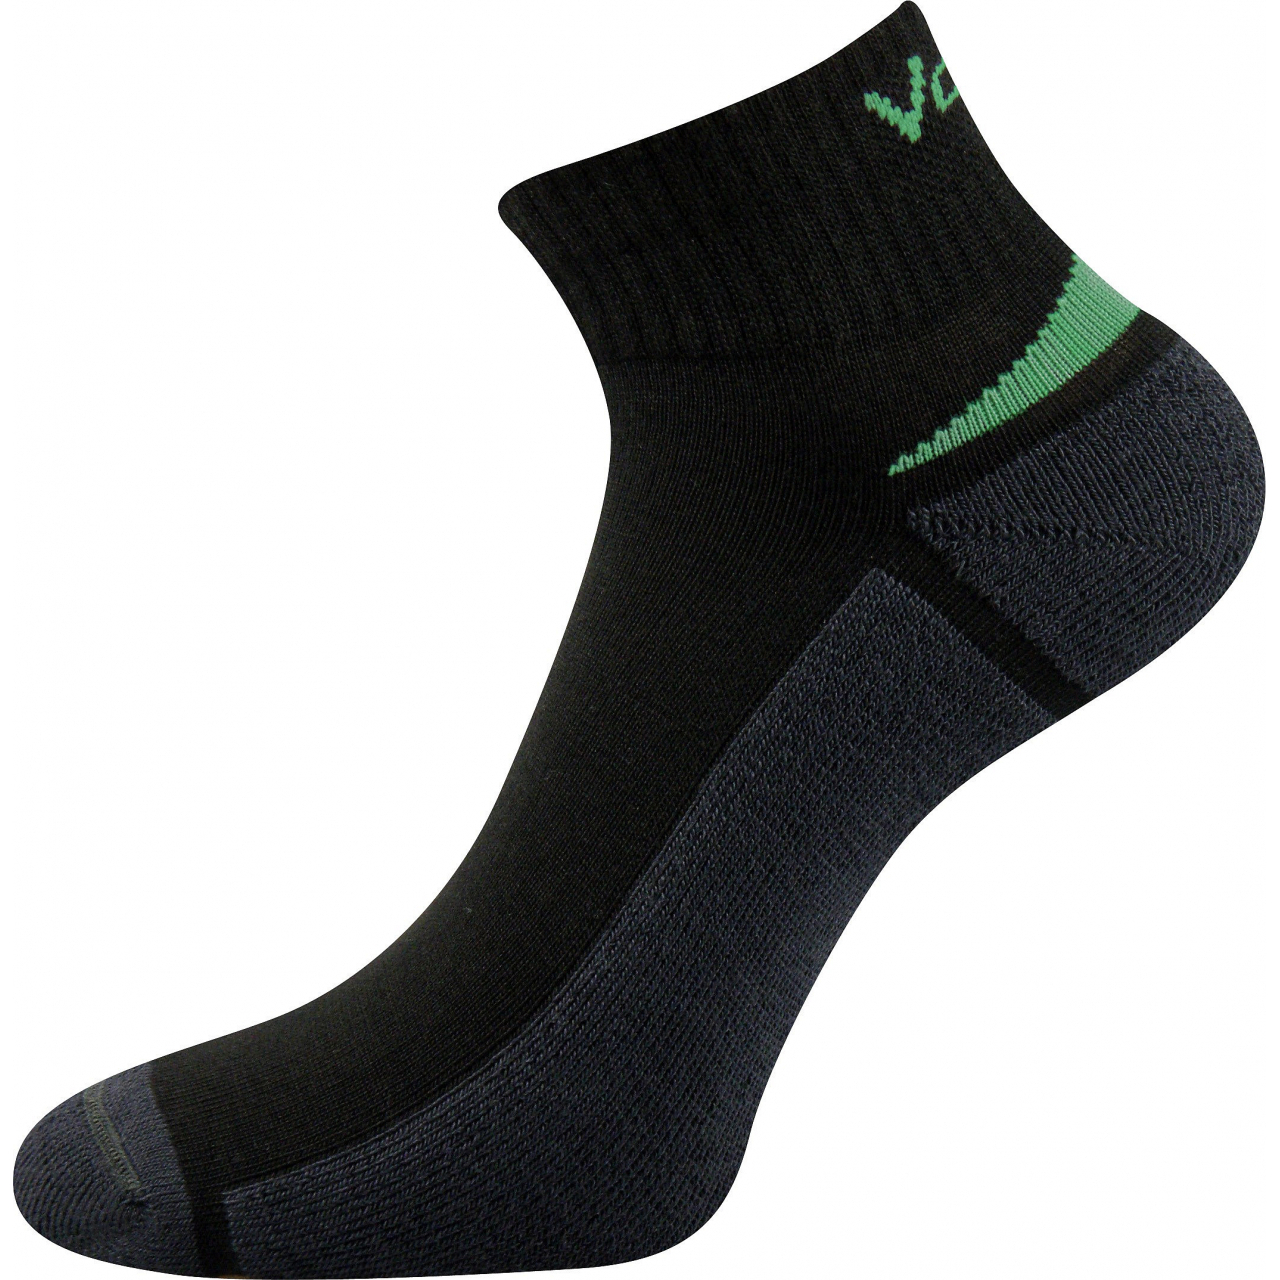 Ponožky snížené sportovní Voxx Aston silproX - černé-zelené, 43-46